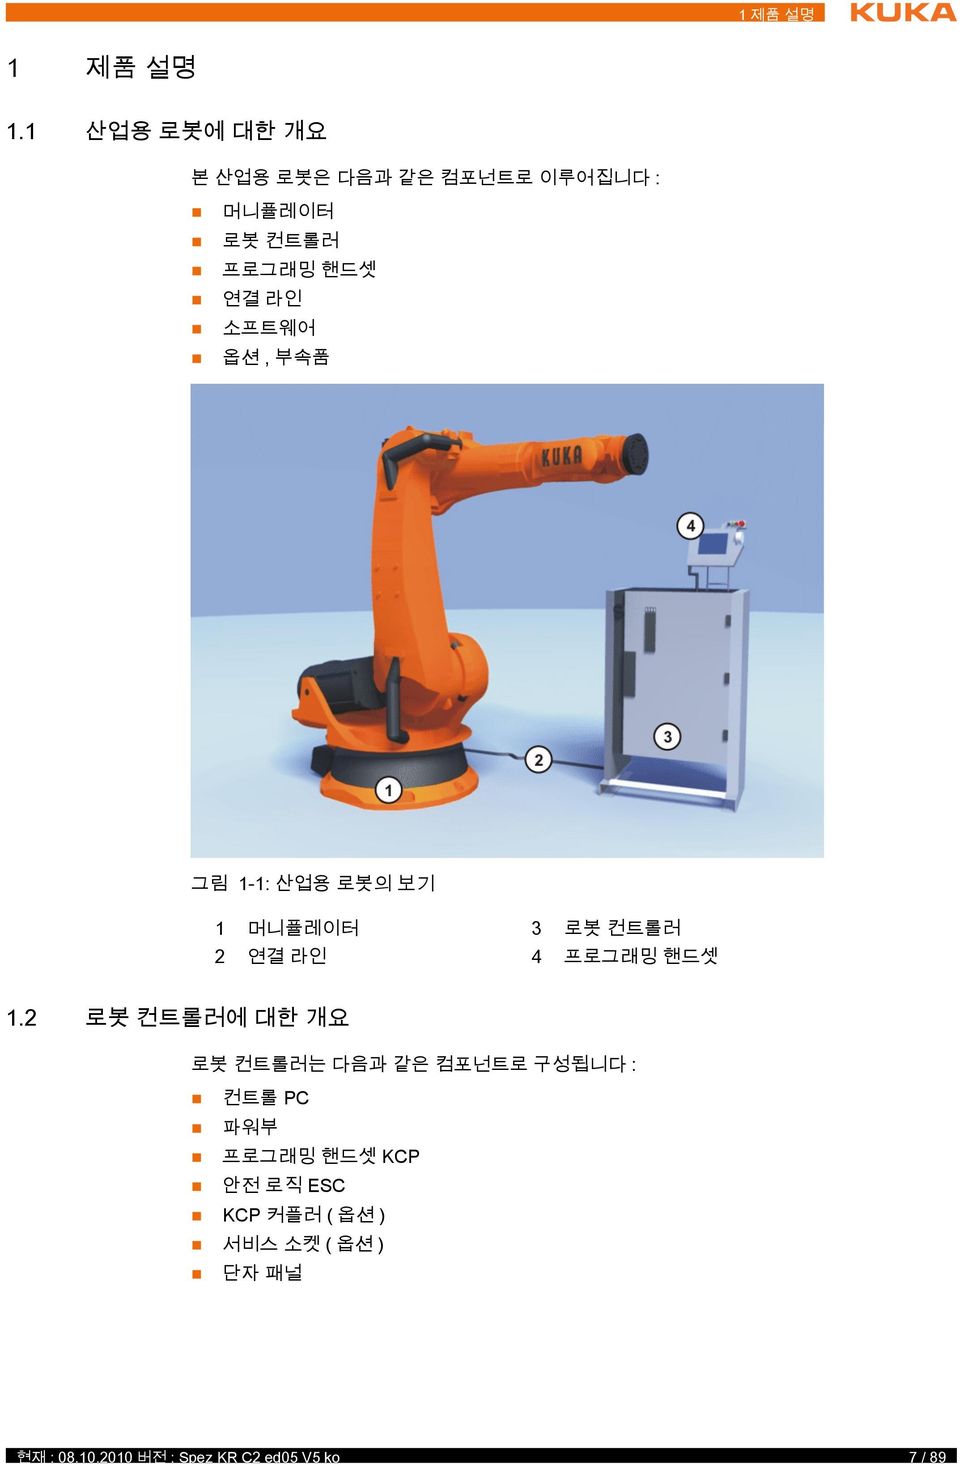 옵션, 부속품 그림 1-1: 산업용 로봇의 보기 1 머니퓰레이터 3 로봇 컨트롤러 2 연결 라인 4 프로그래밍 핸드셋 1.